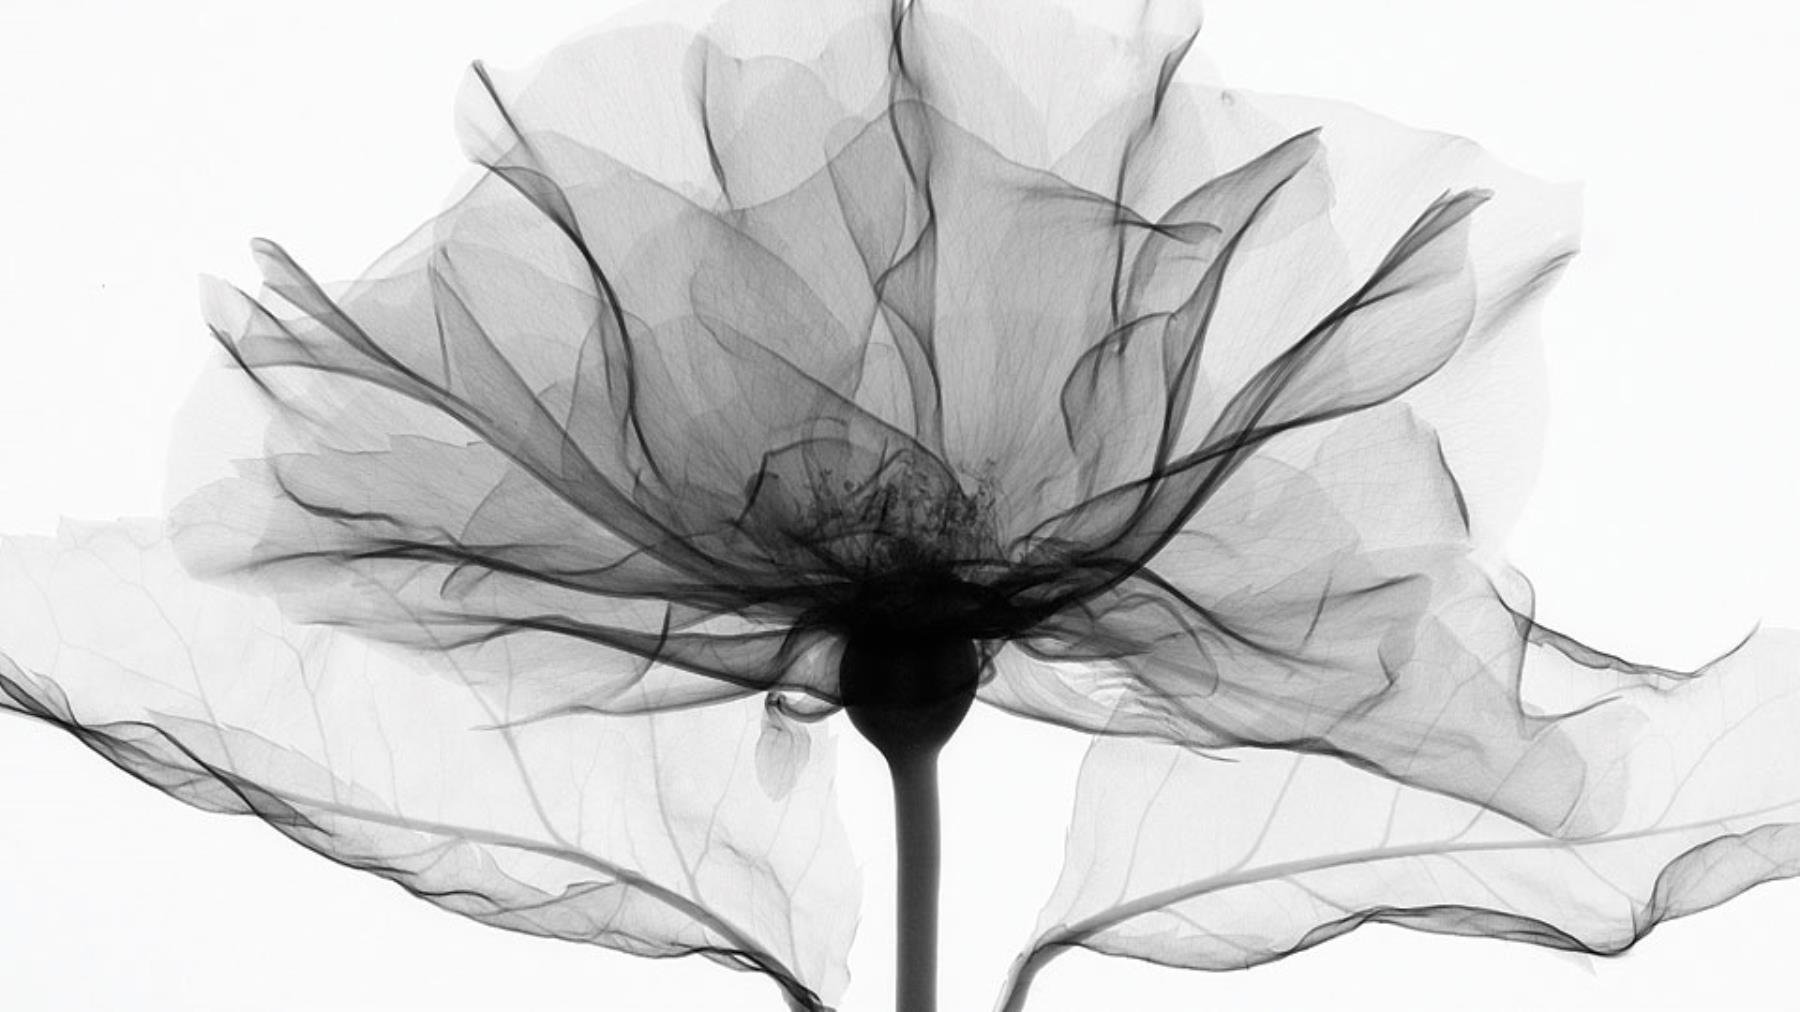 Fabric render api. Прозрачные цветы. Черно-белый цветок. Абстракция в черно-белом цвете. Рентген цветов.